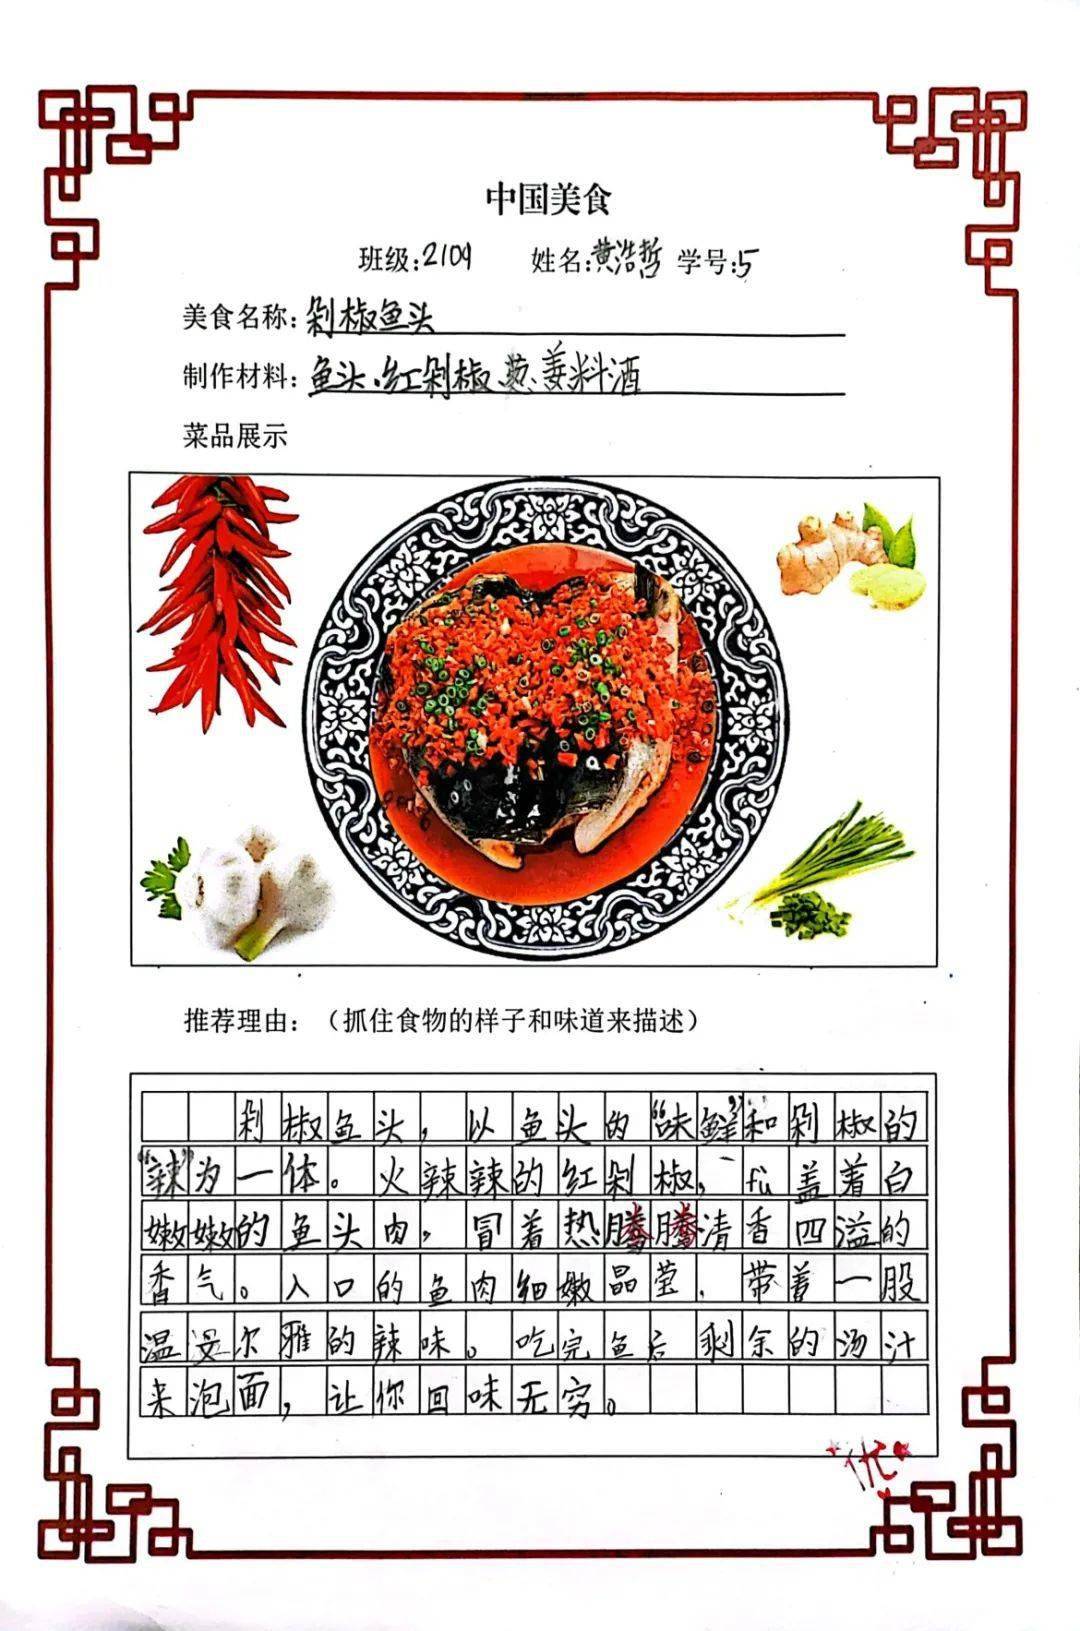 二年级中国美食美篇图片